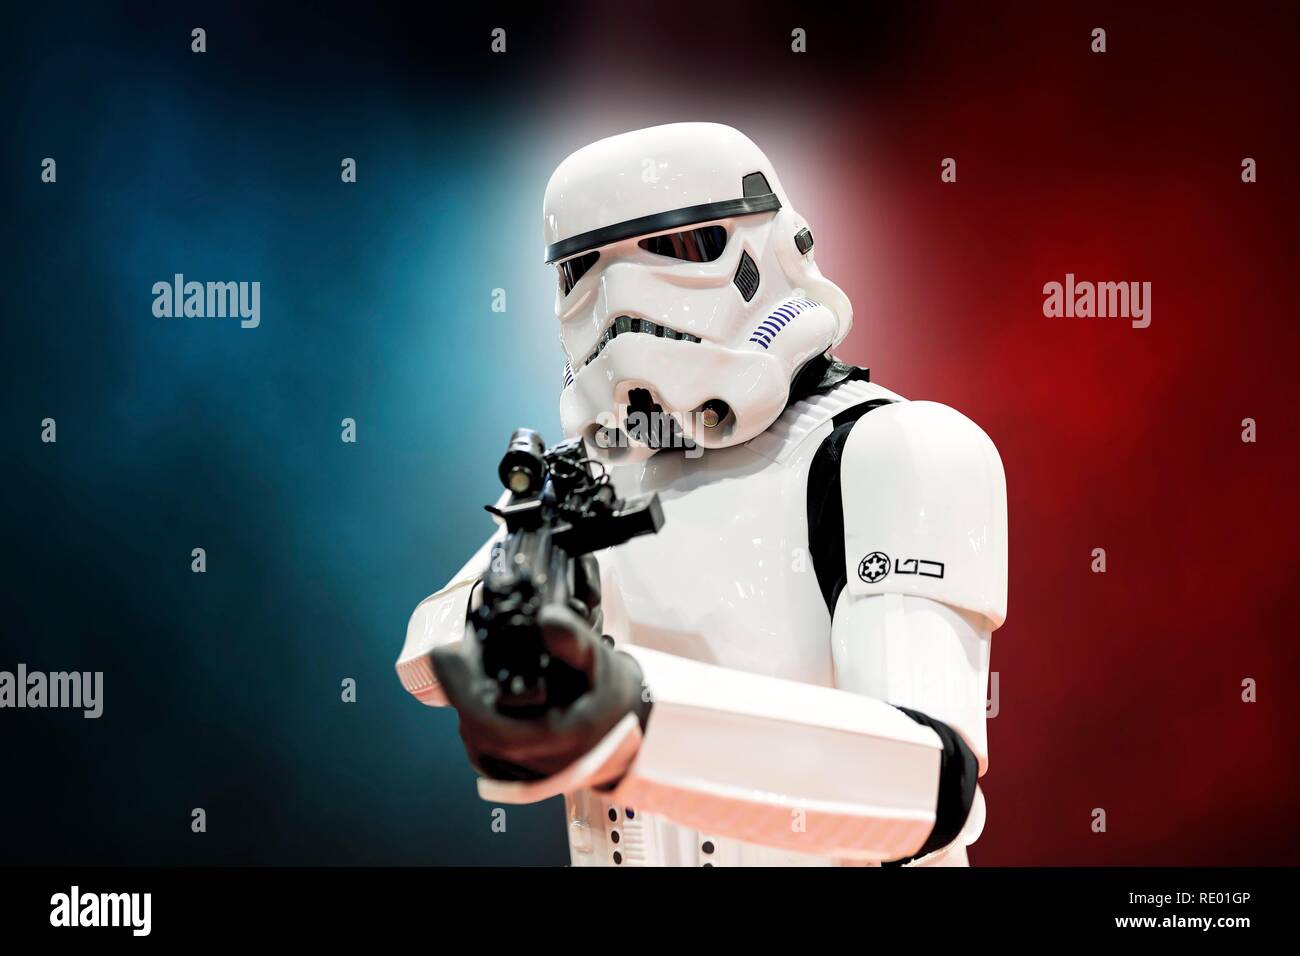 Birmingham, UK - le 17 mars 2018. Cosplayeur vêtu d'un costume de Storm Trooper films Star Wars dans un comic con à Birmingham (Royaume-Uni), pointant une arme à feu Banque D'Images